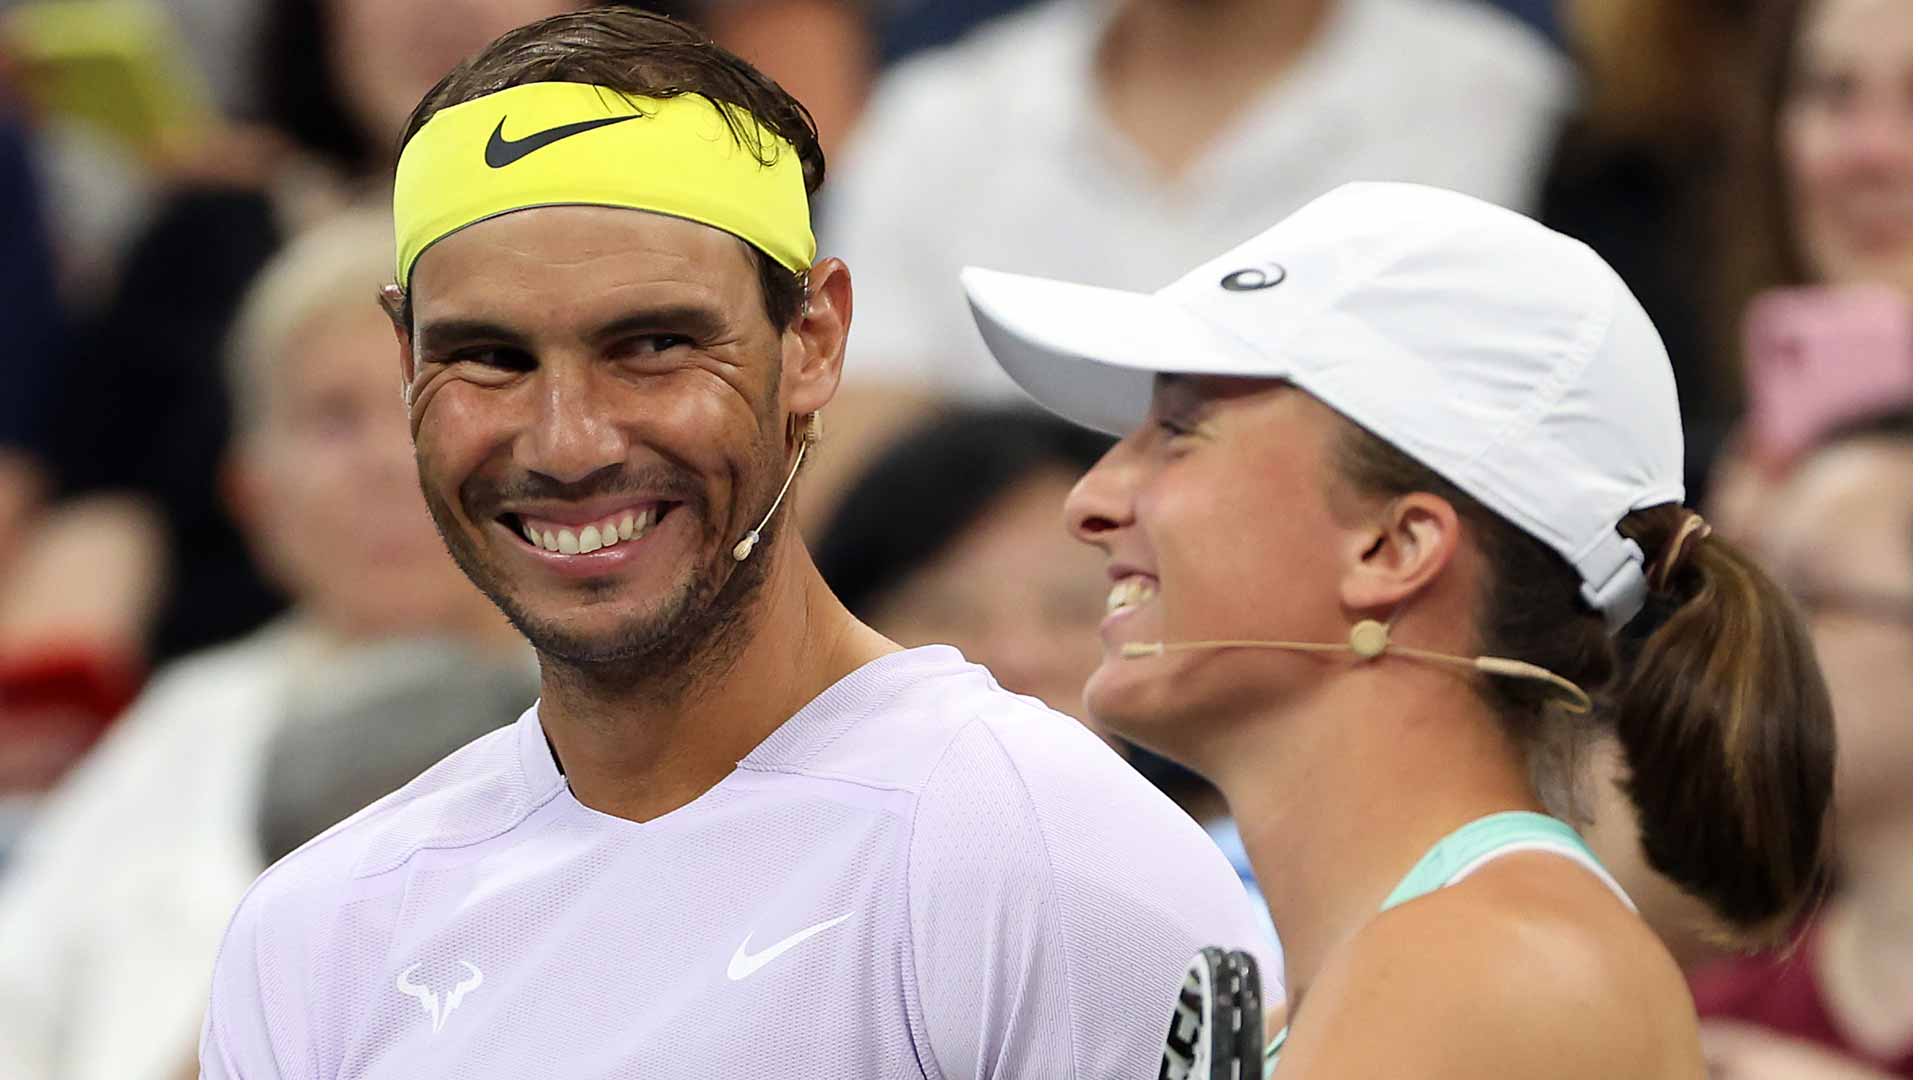 Swiatek on Nadal: 'He seems happy & that's most important'